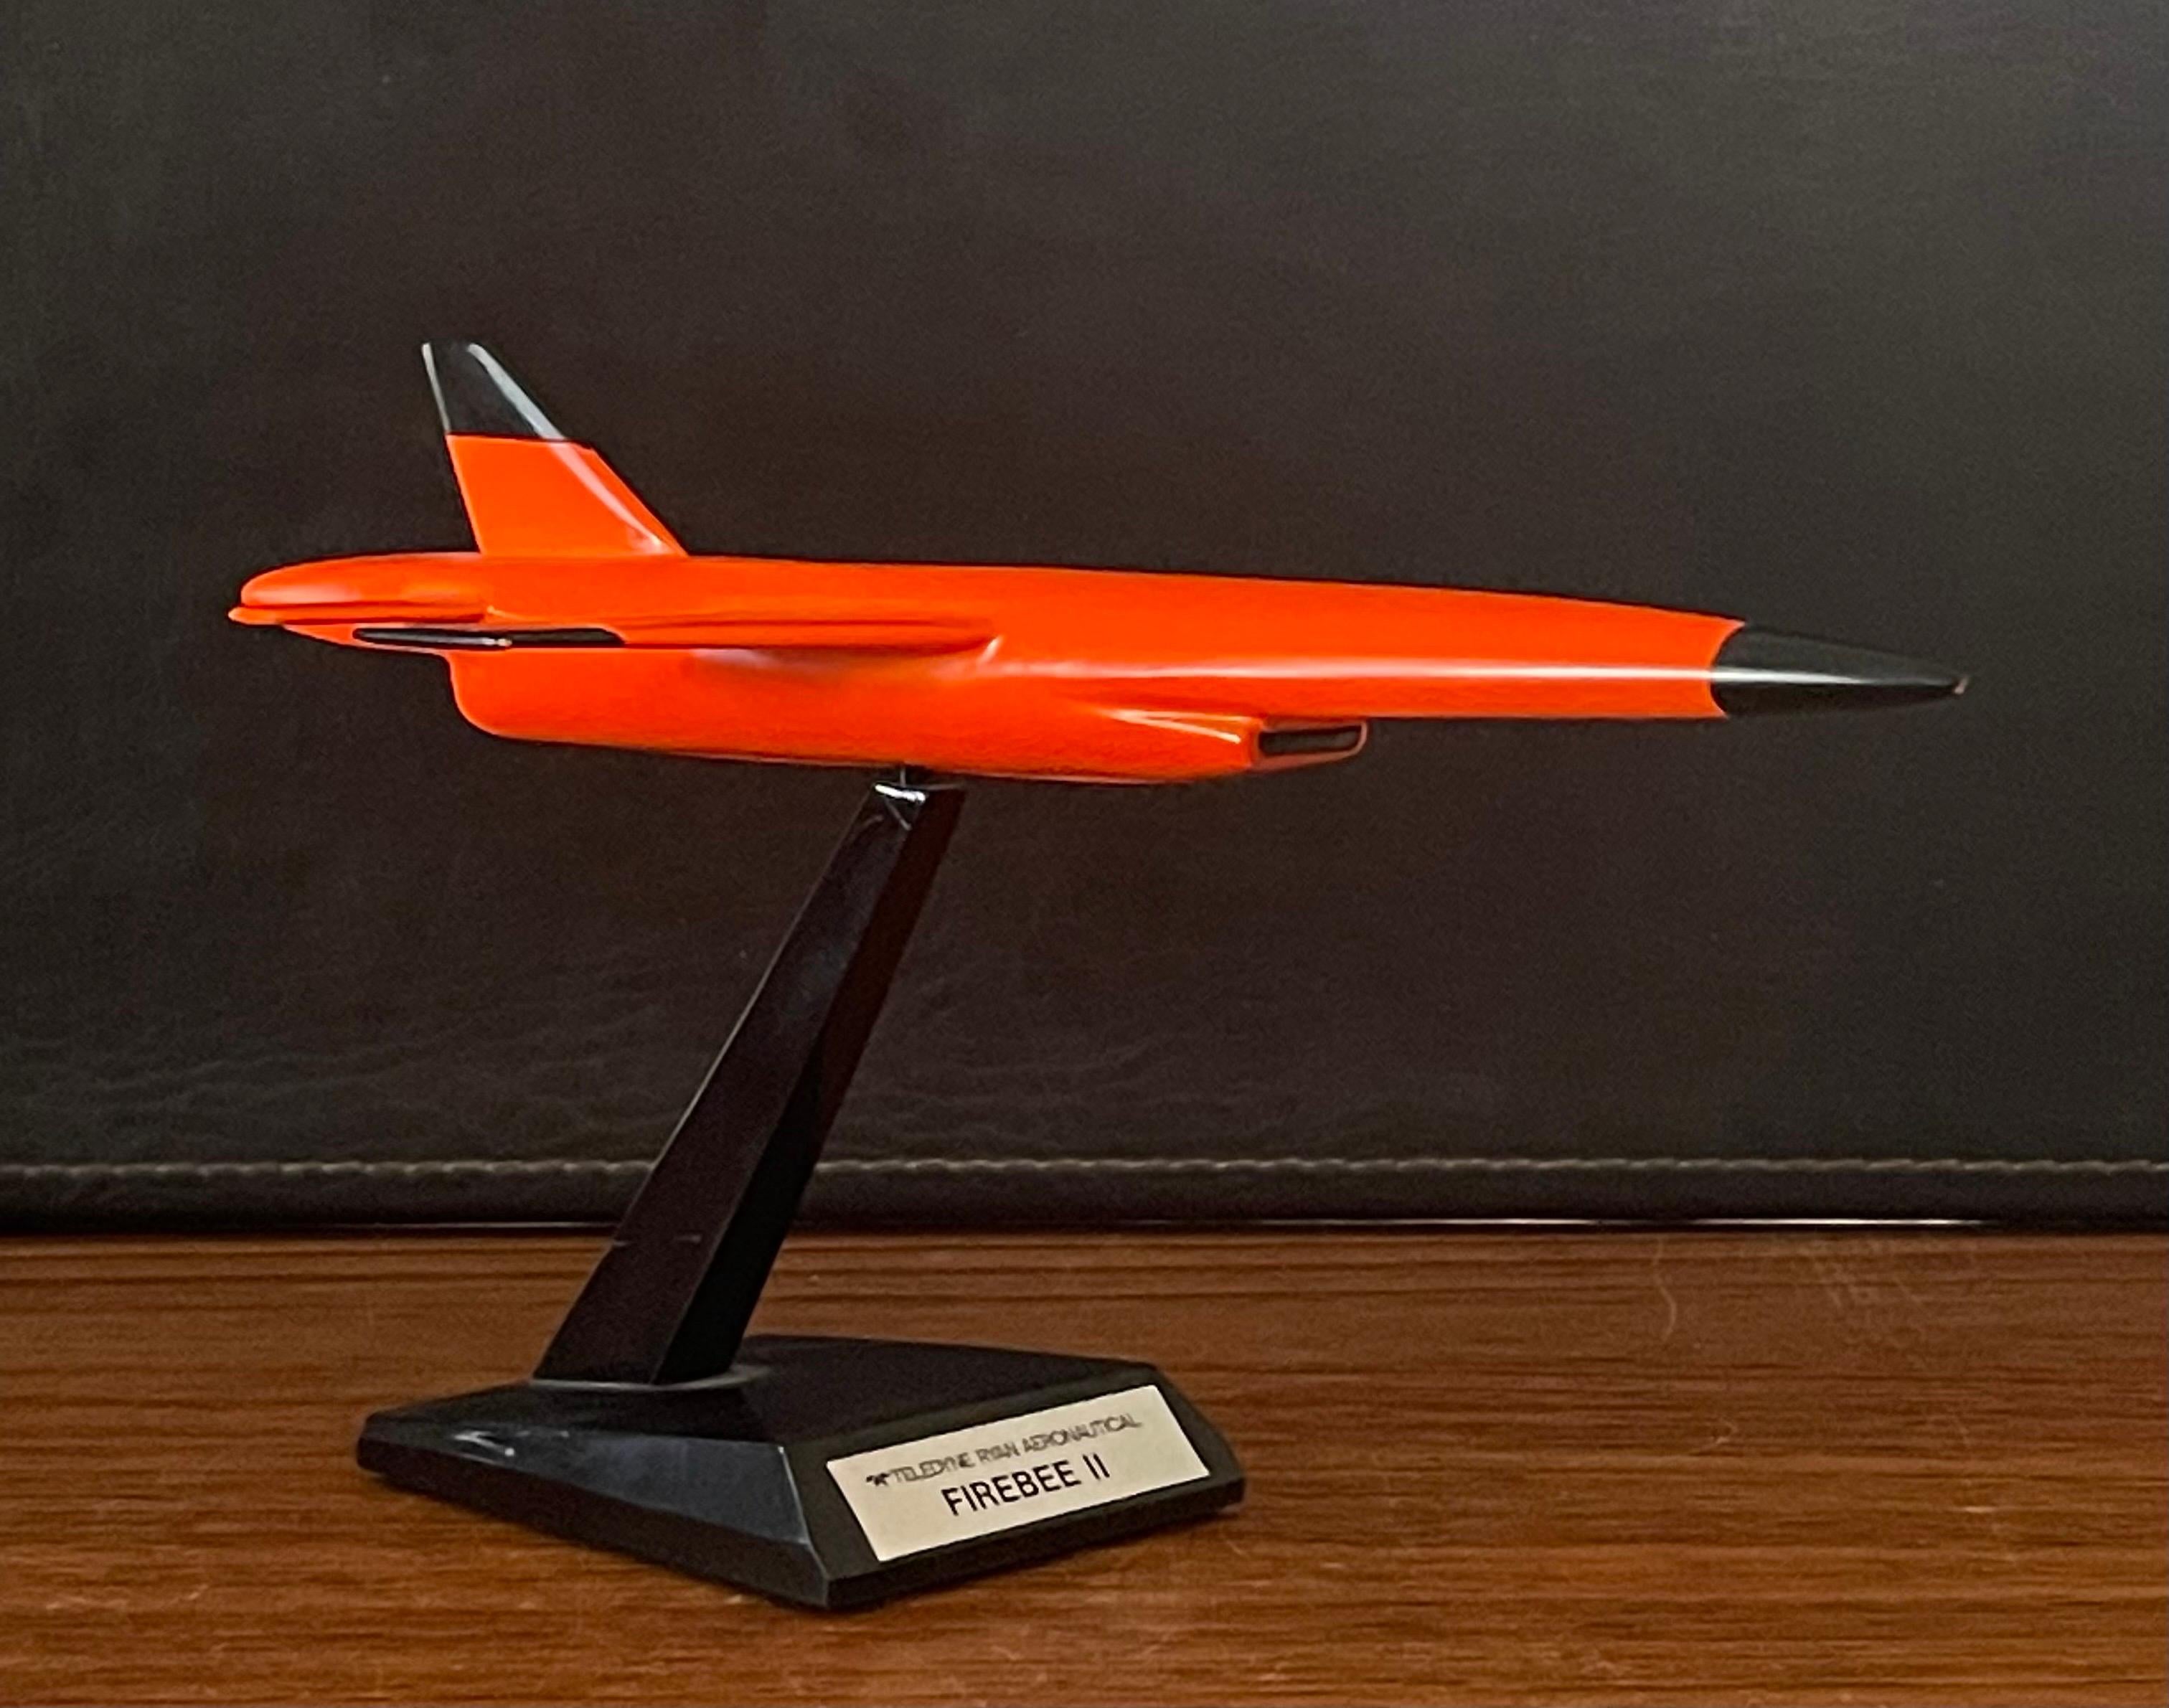 Teledyne Ryan Firebee II Drone Contractor's Desk Model For Sale 5